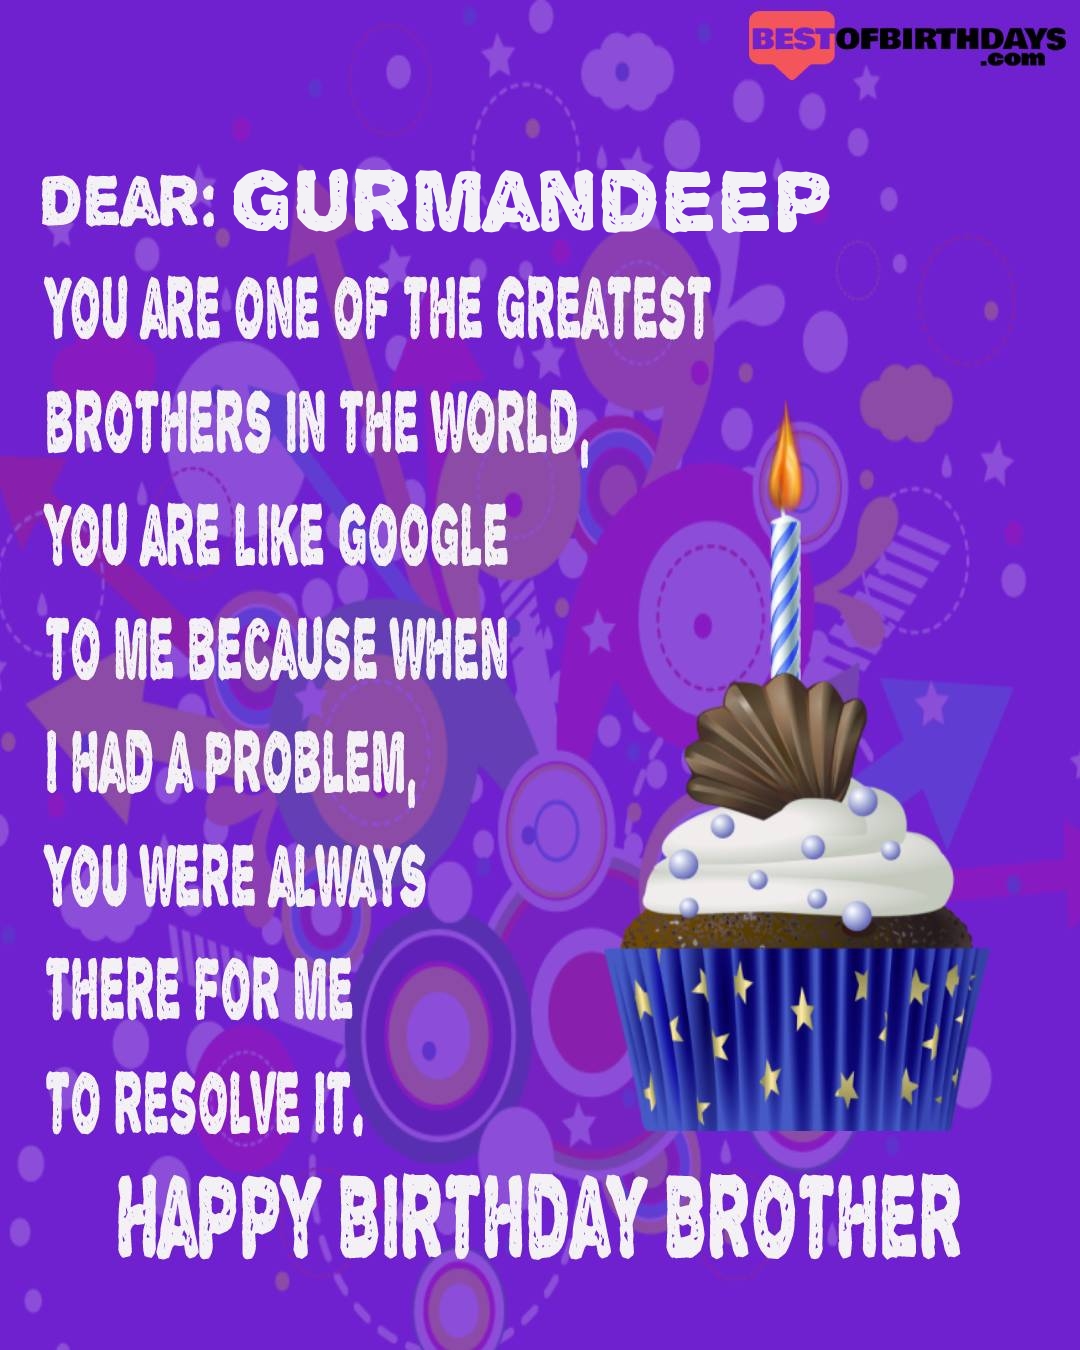 Happy birthday gurmandeep bhai brother bro